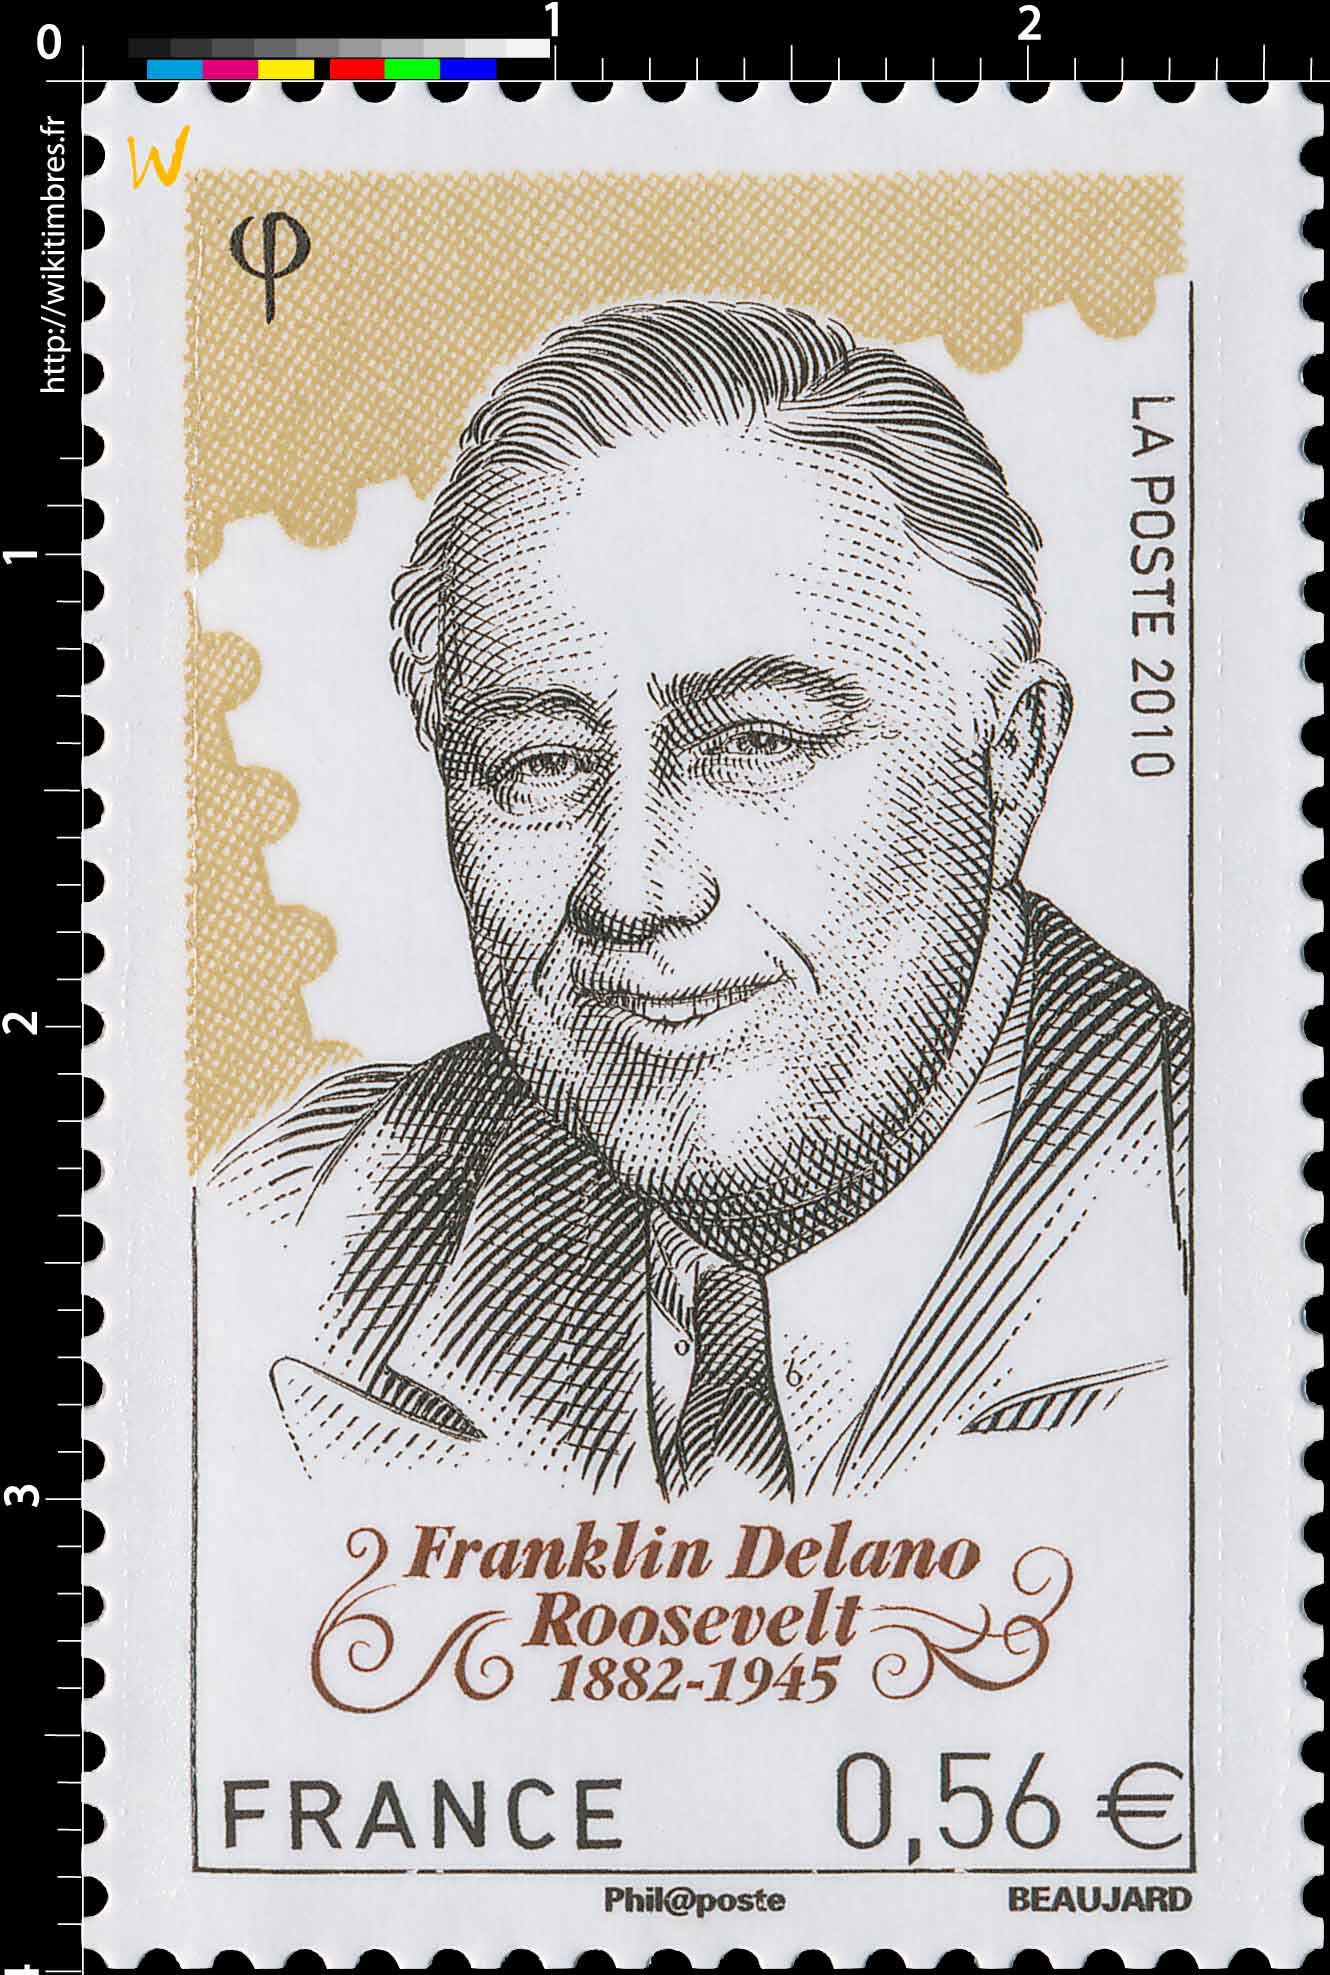 2010 Franklin Delano Roosevelt (1882-1945)